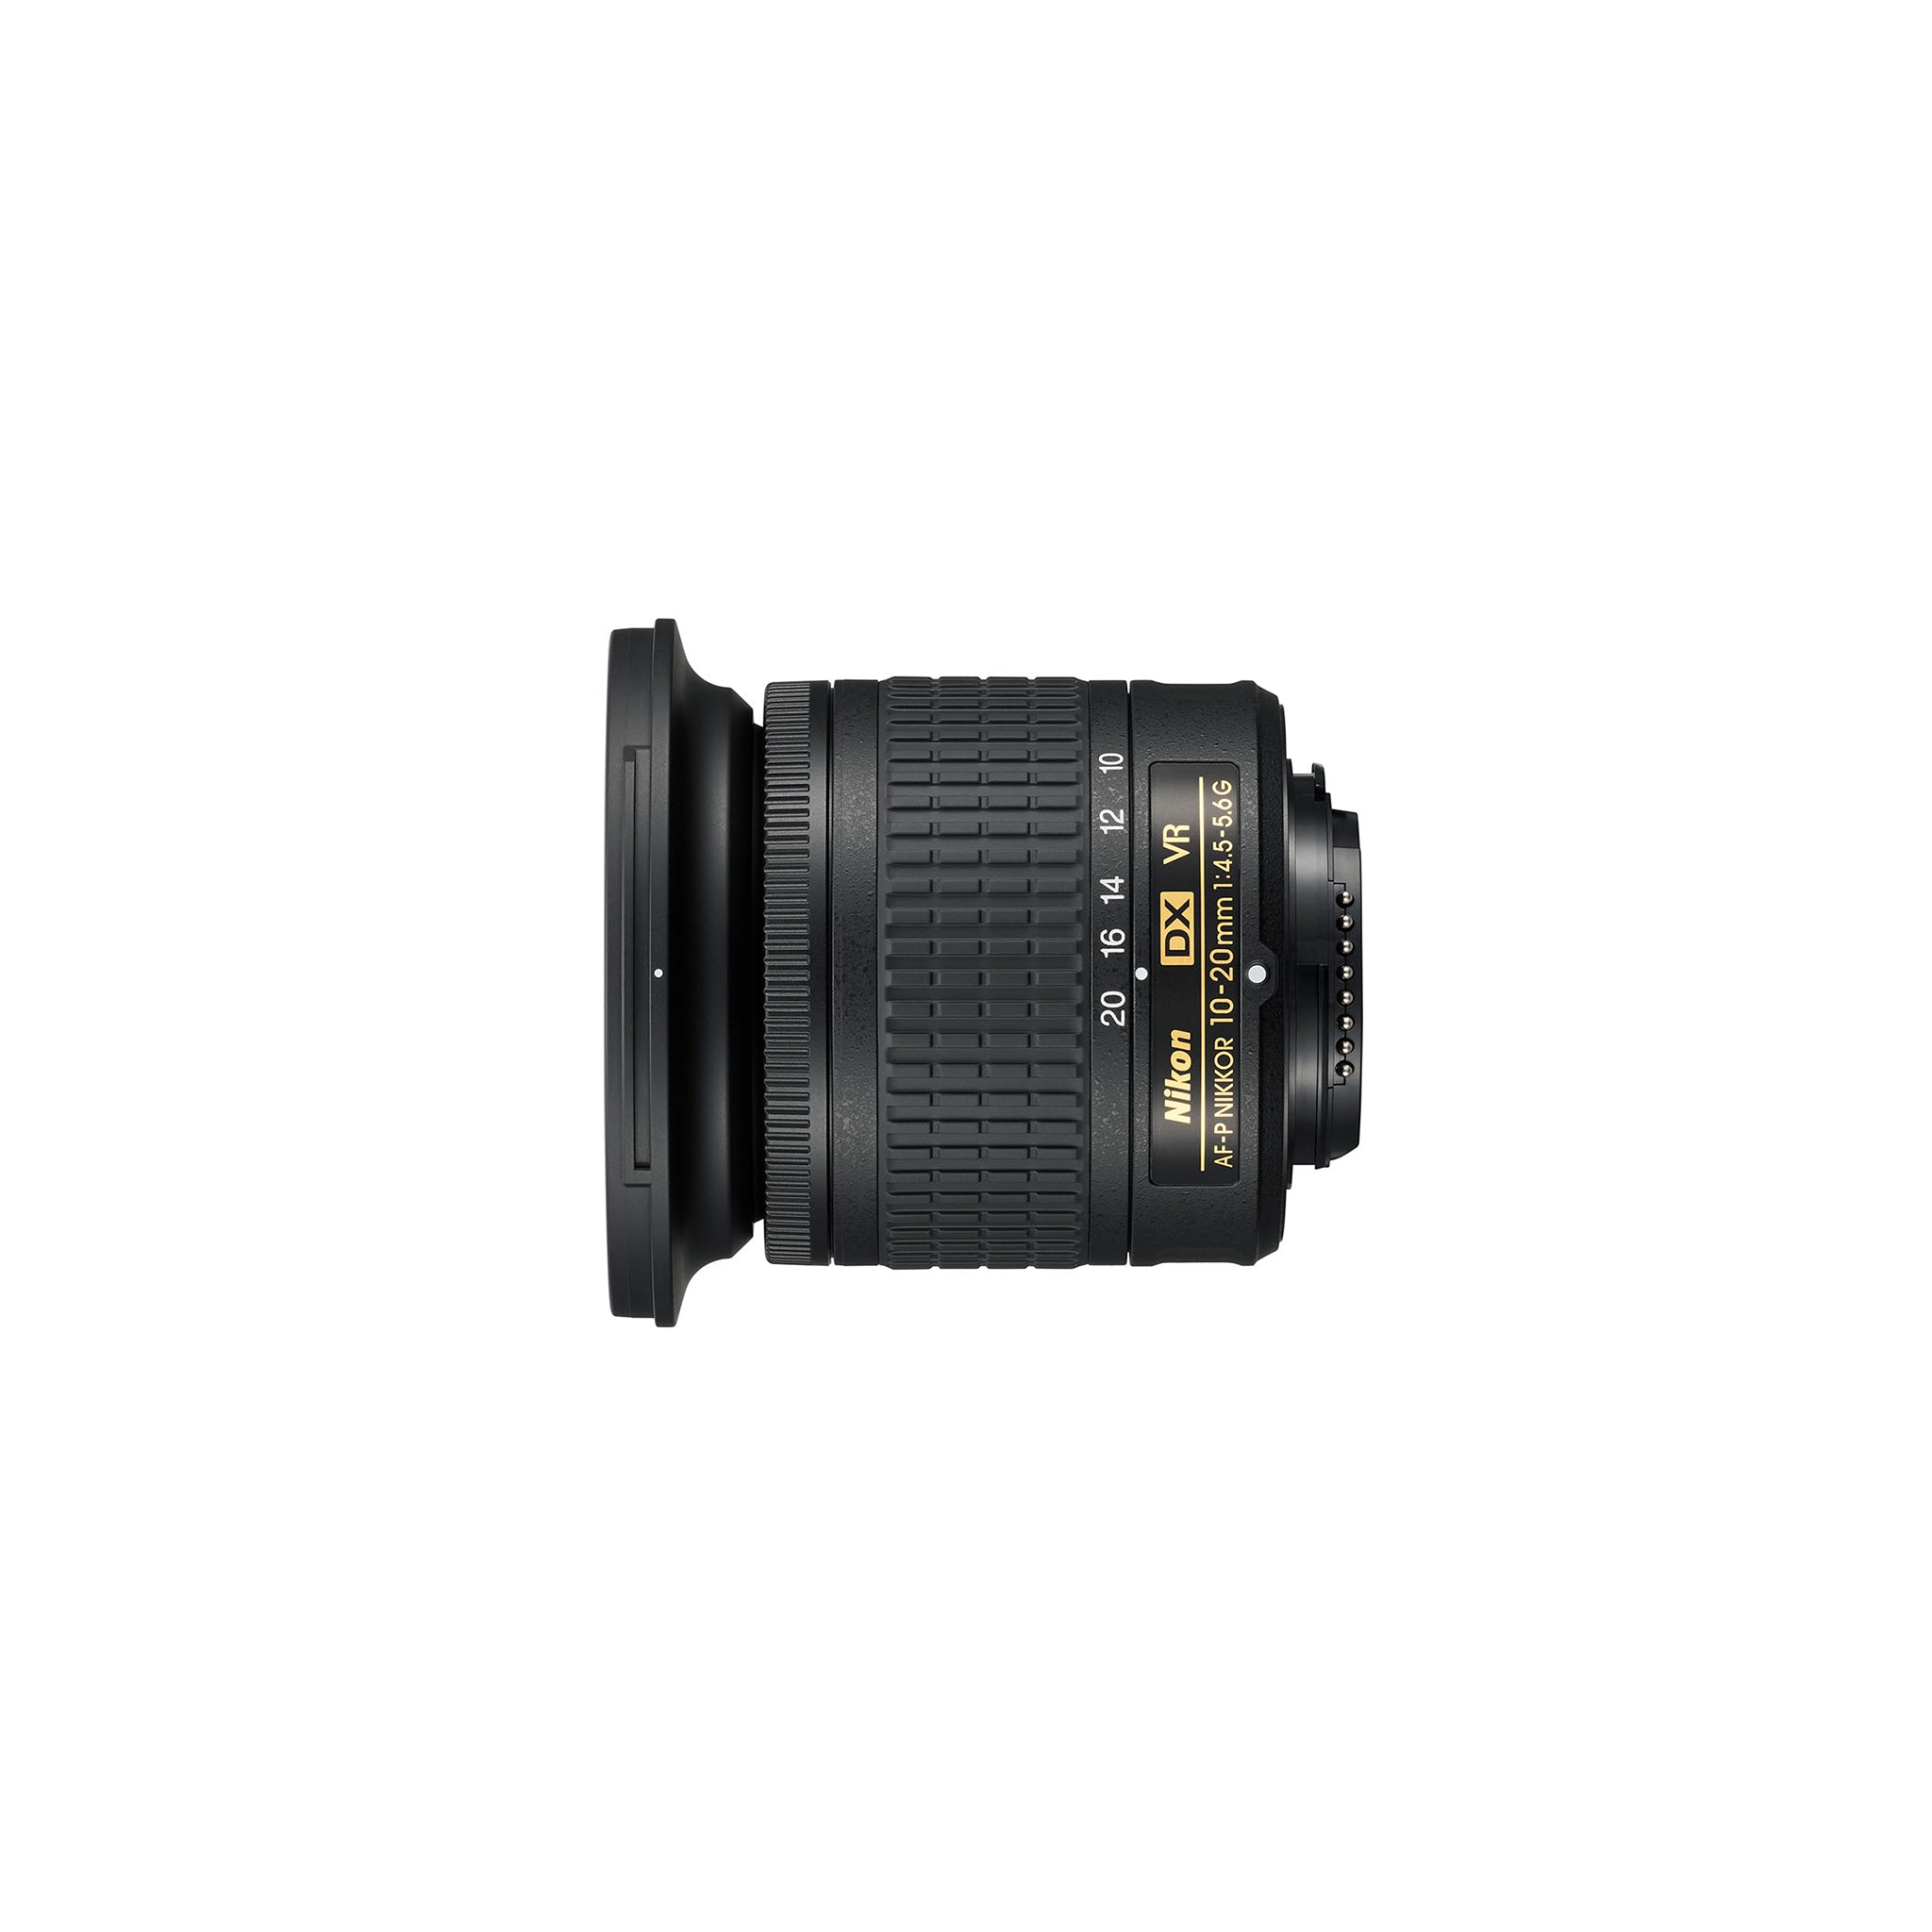 Nikon AF-P 10-20mm F4.5-5.6G VR DX Lens